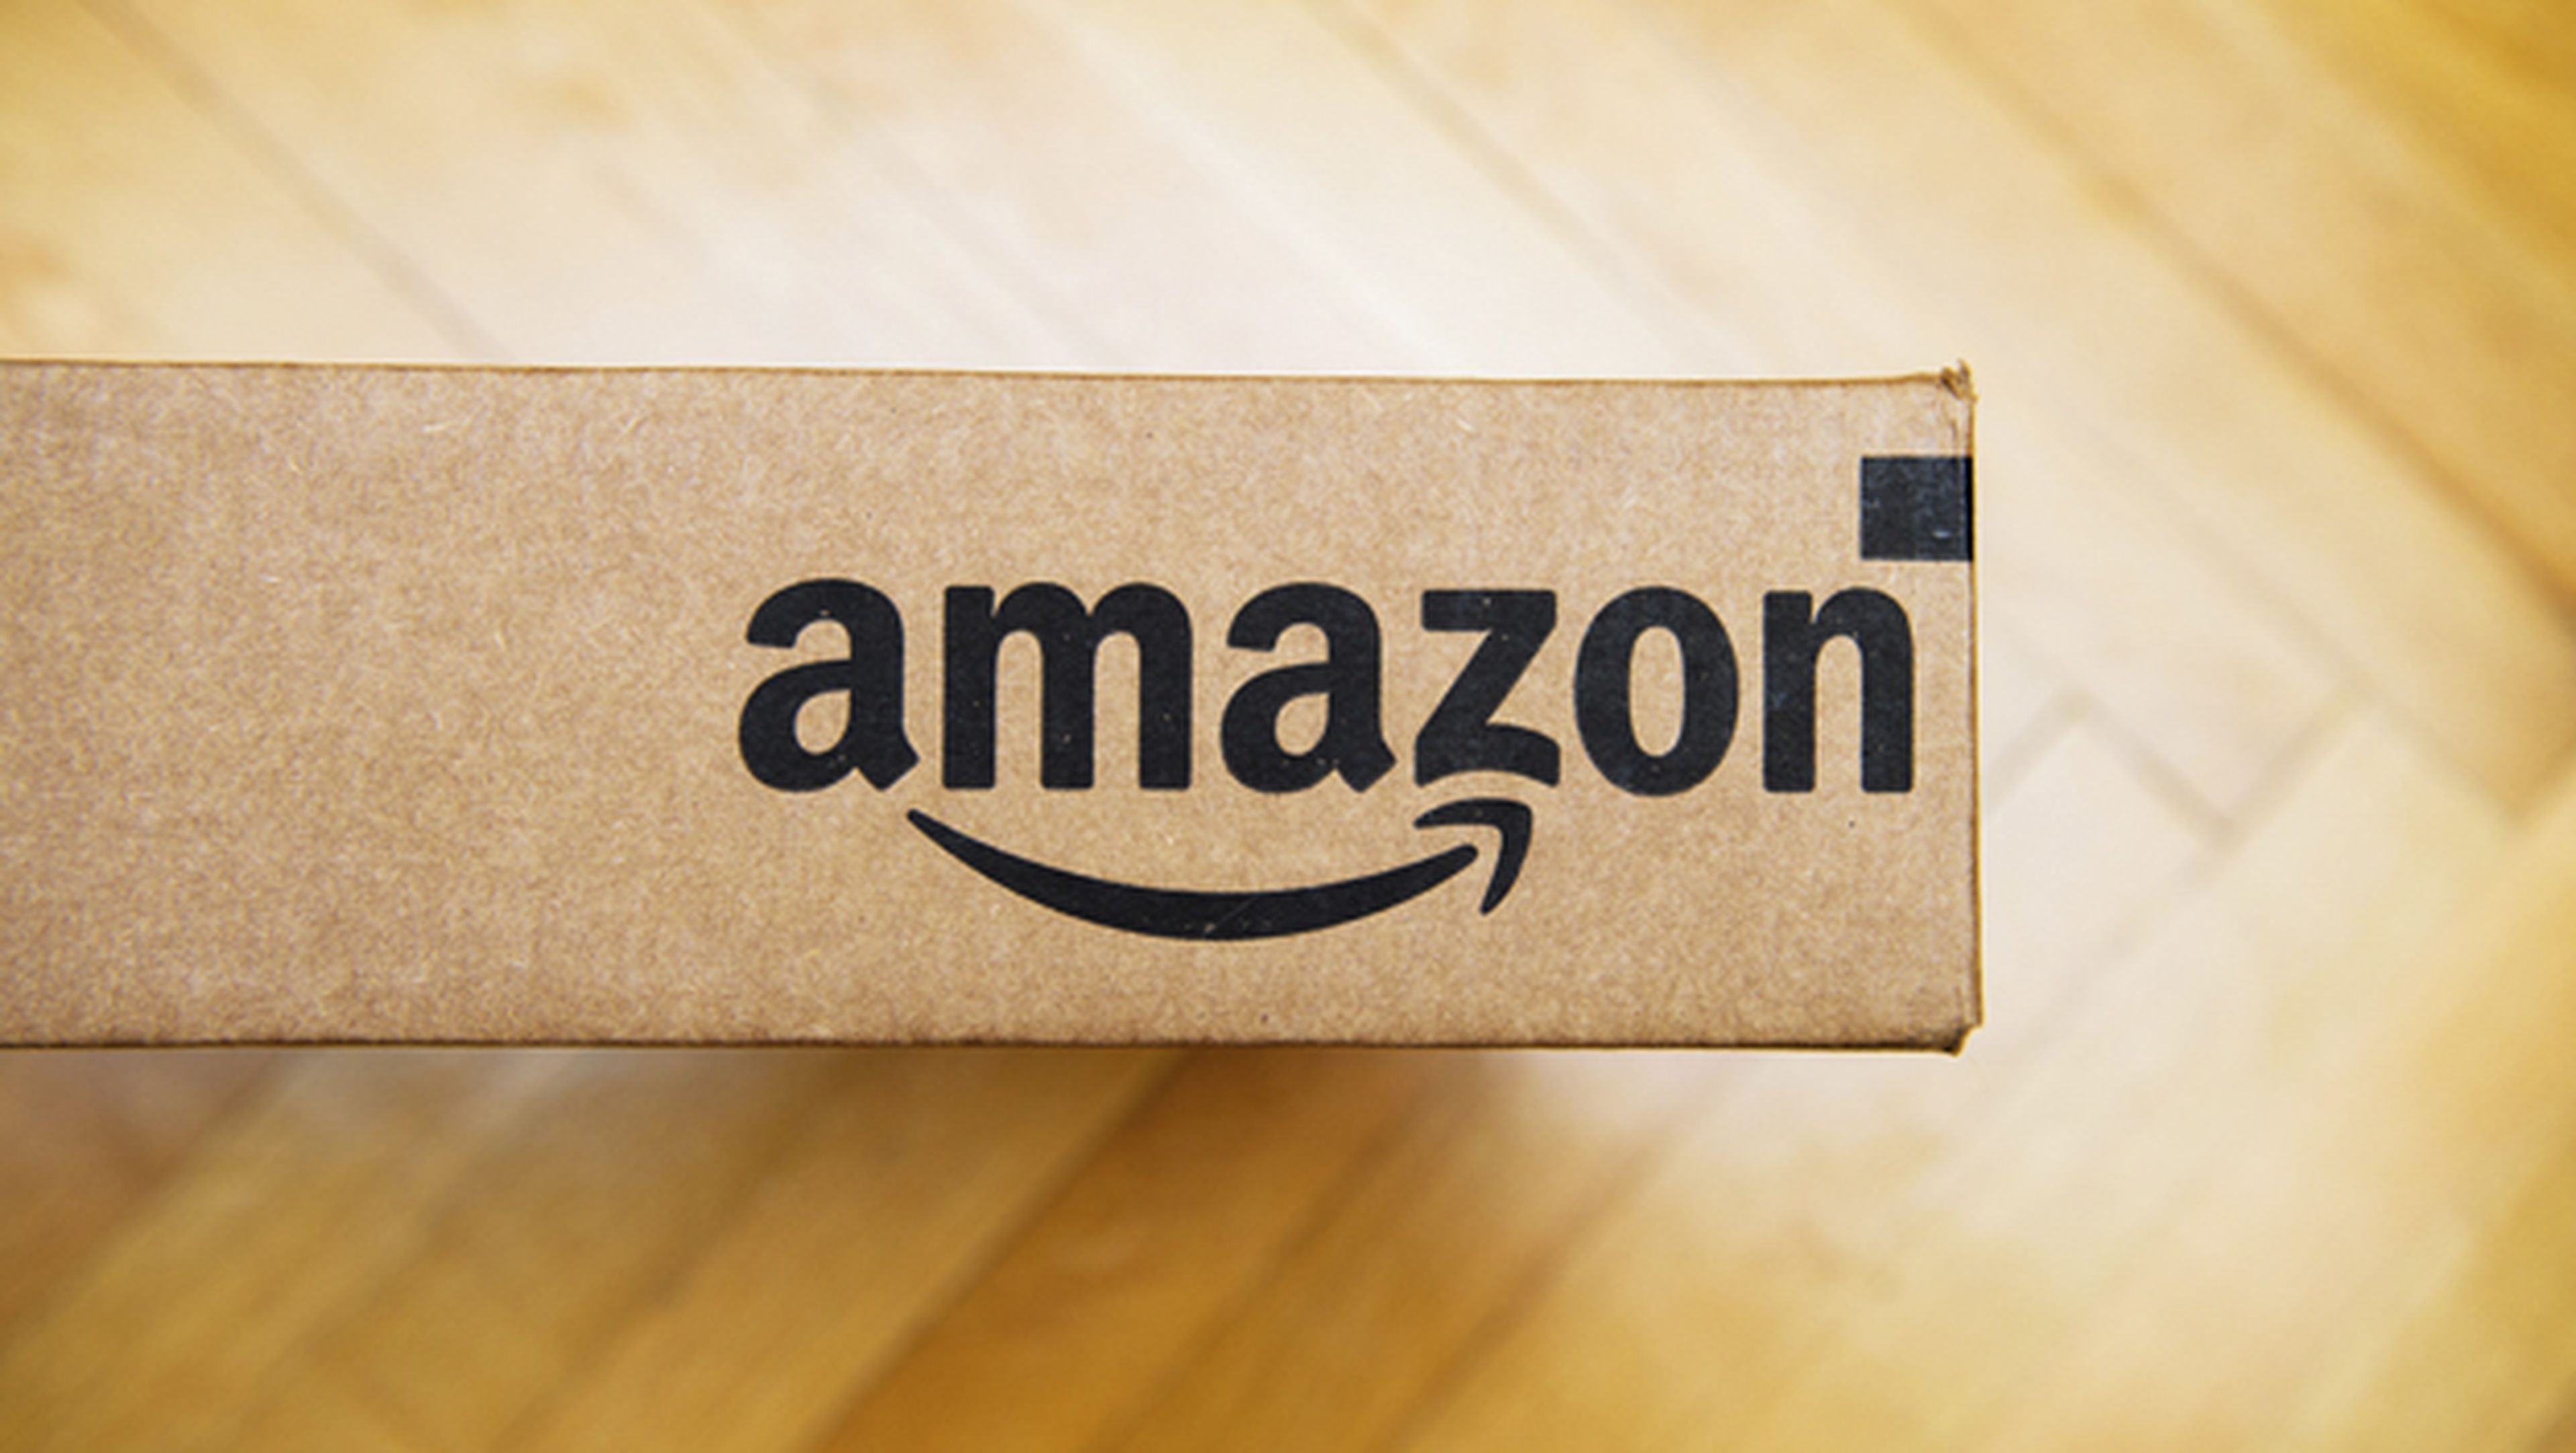 Amazon Renewed